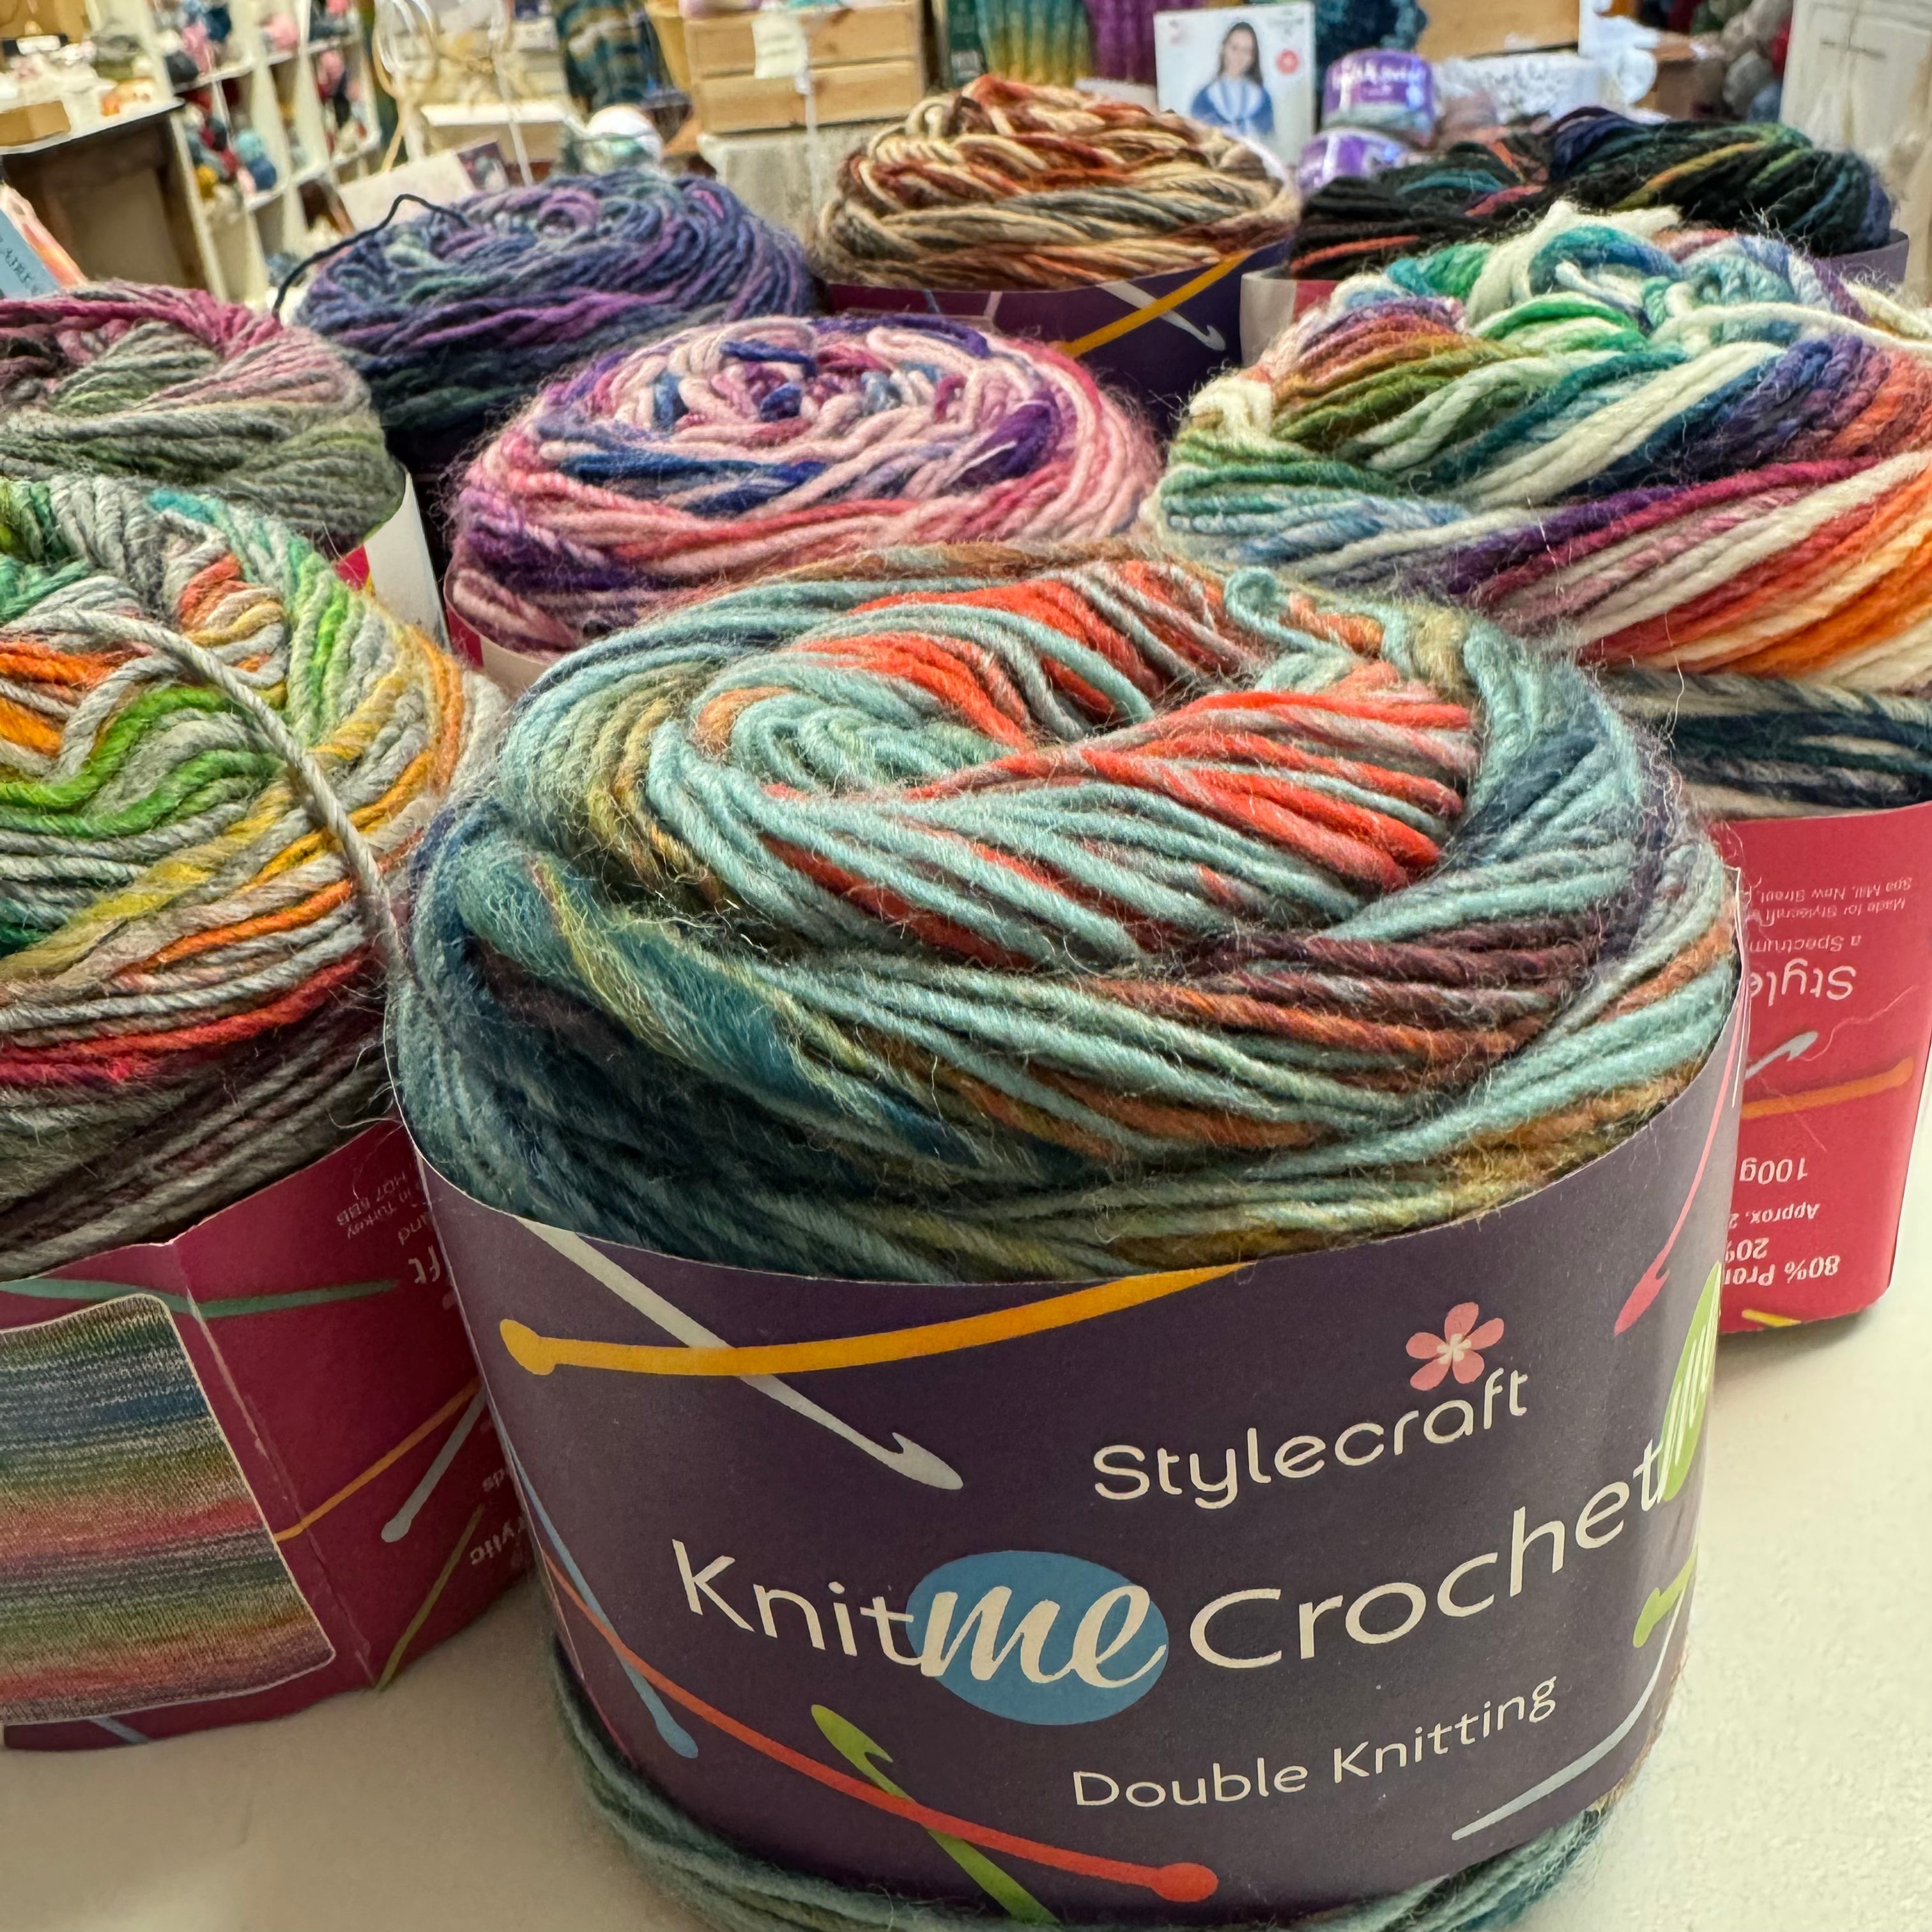 Stylecraft 'Knit me, Crochet me' DK